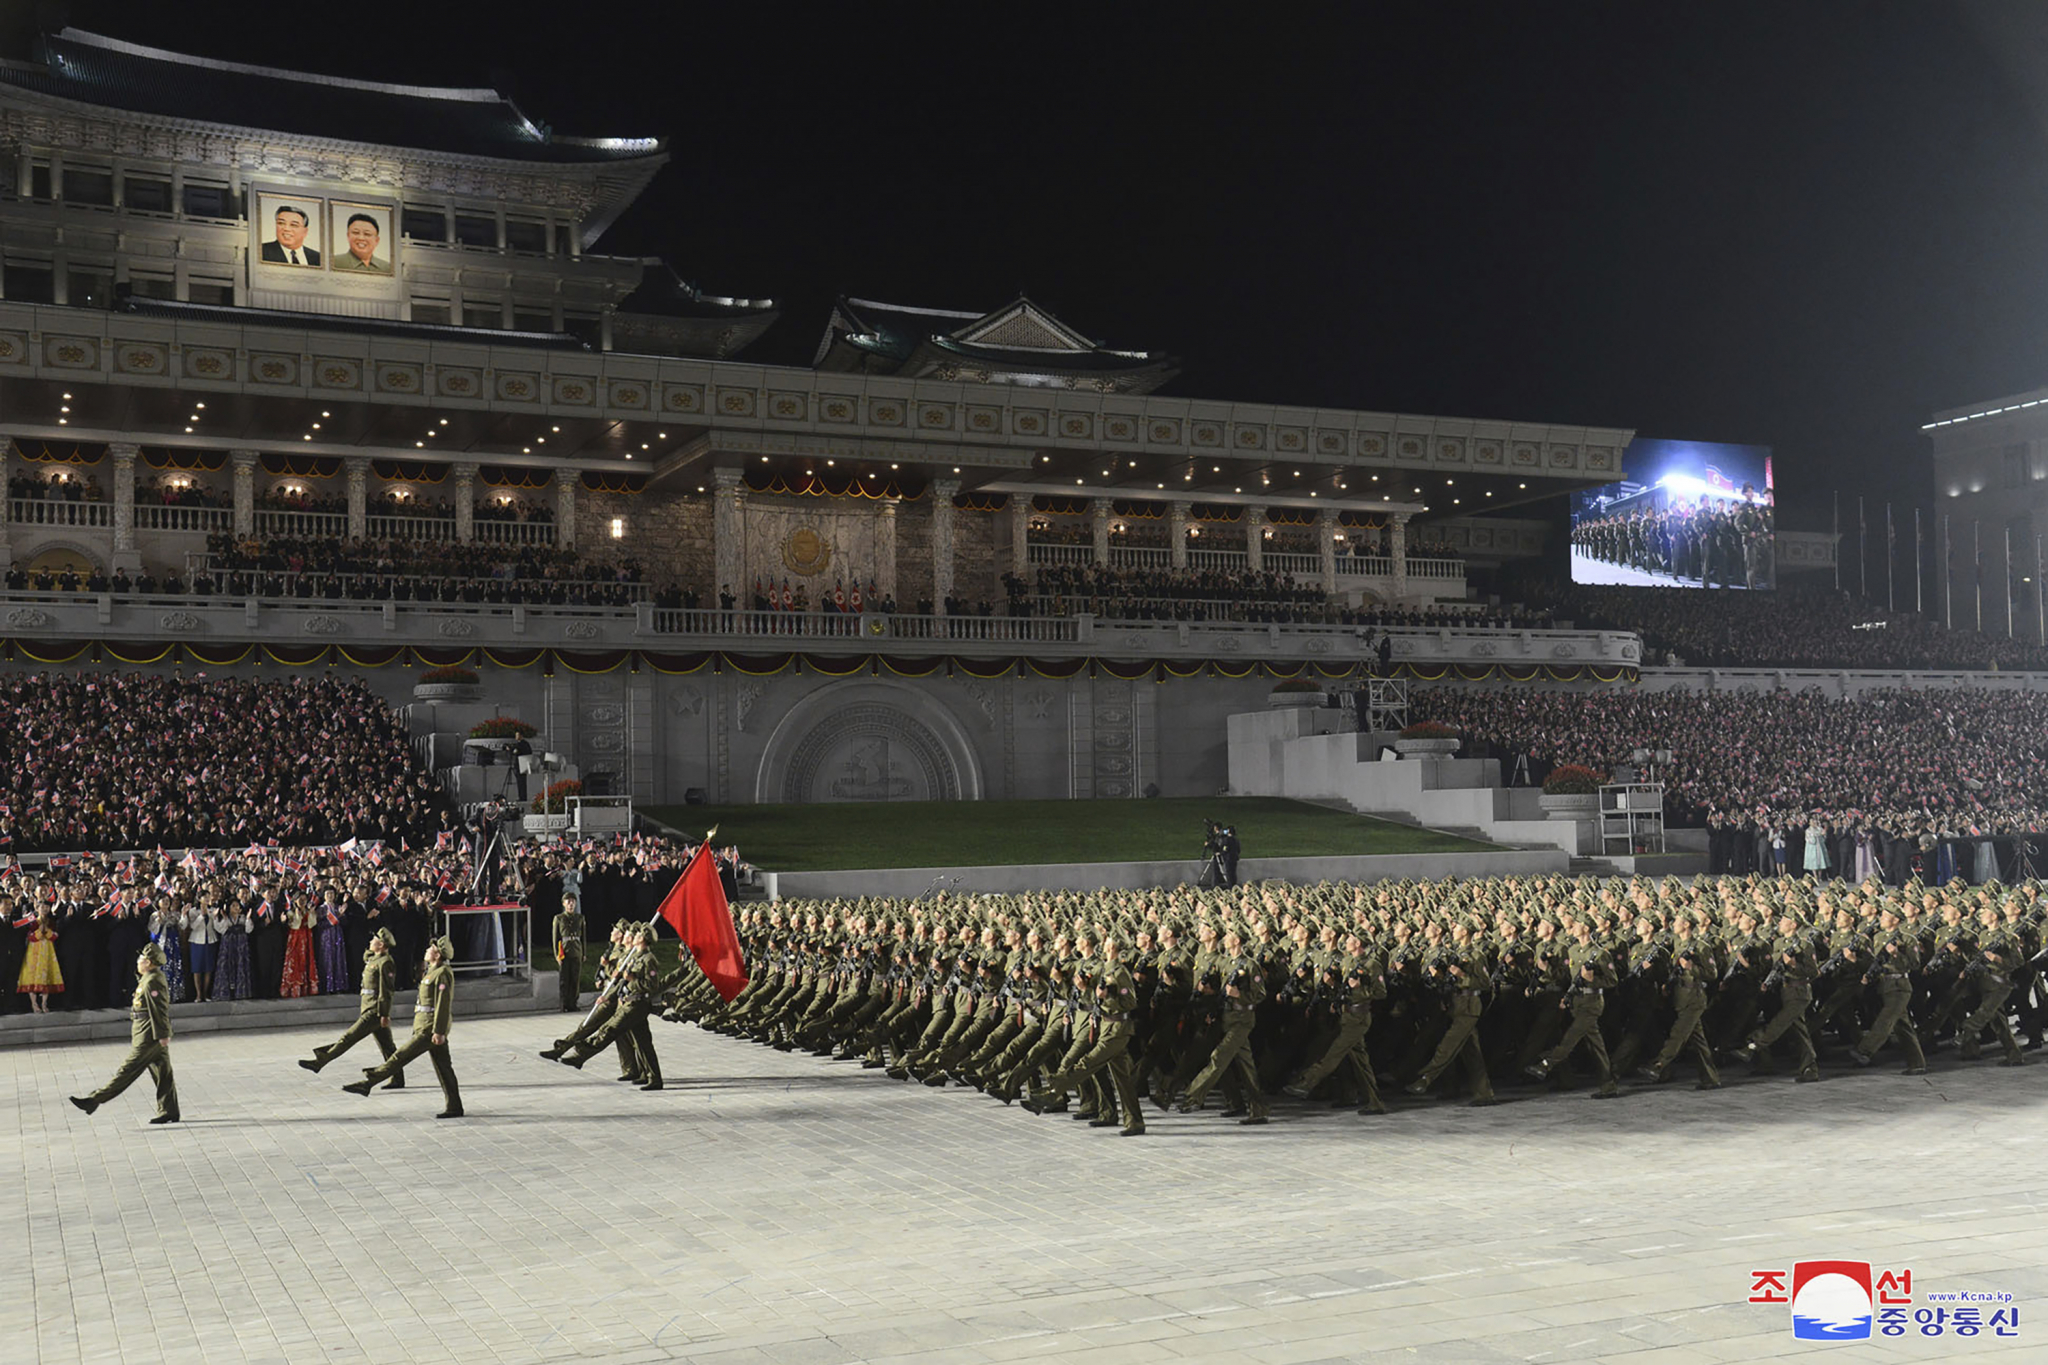 NEVERICA NA PARADI U SEVERNOJ KOREJI Kim drastično smršao, gas maske i zaštitna odela na vojnicima, raketa nigde (FOTO)